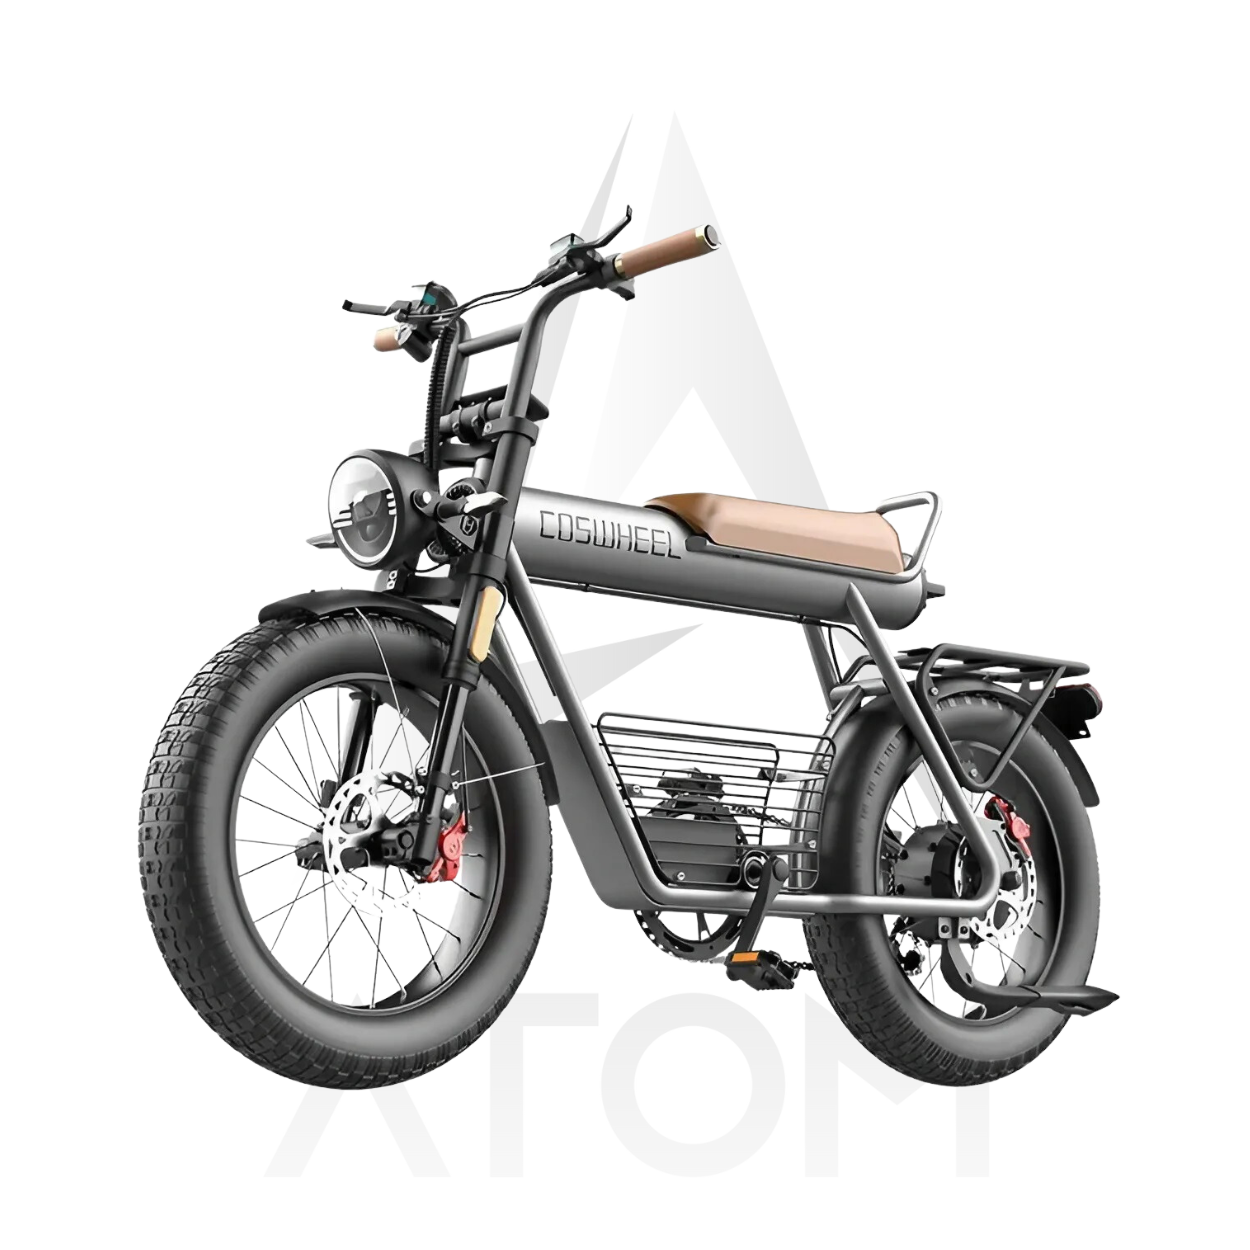 Vélo électrique Fatbike | COSWHEEL CT20 | 750W / 1000W | V-max 25 km/h | Autonomie 100 km - Atom Motors